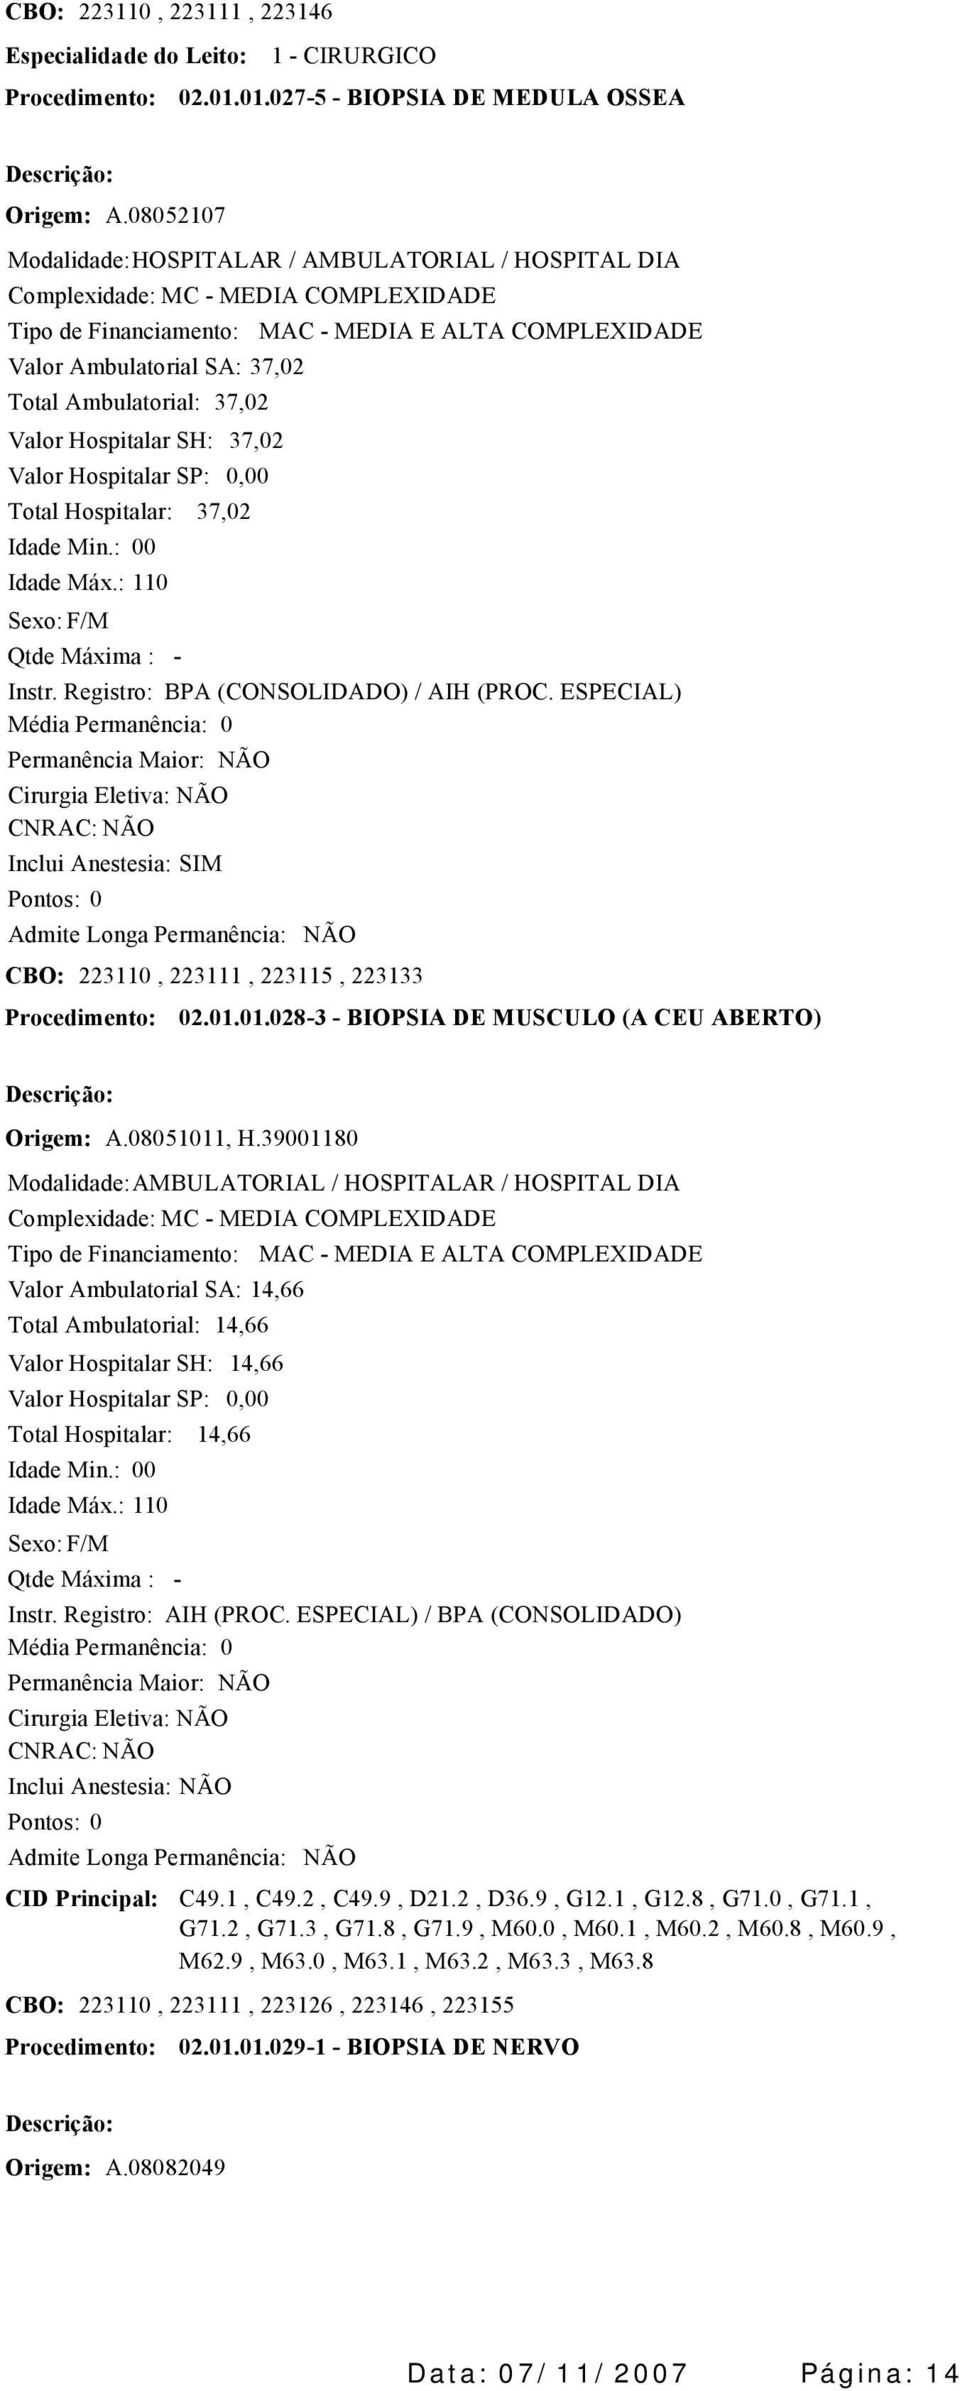 01.0283 BIOPSIA DE MUSCULO (A CEU ABERTO) Origem: A.08051011, H.39001180 / HOSPITALAR / HOSPITAL DIA Valor Ambulatorial SA: 14,66 14,66 14,66 14,66 Instr. Registro: AIH (PROC.